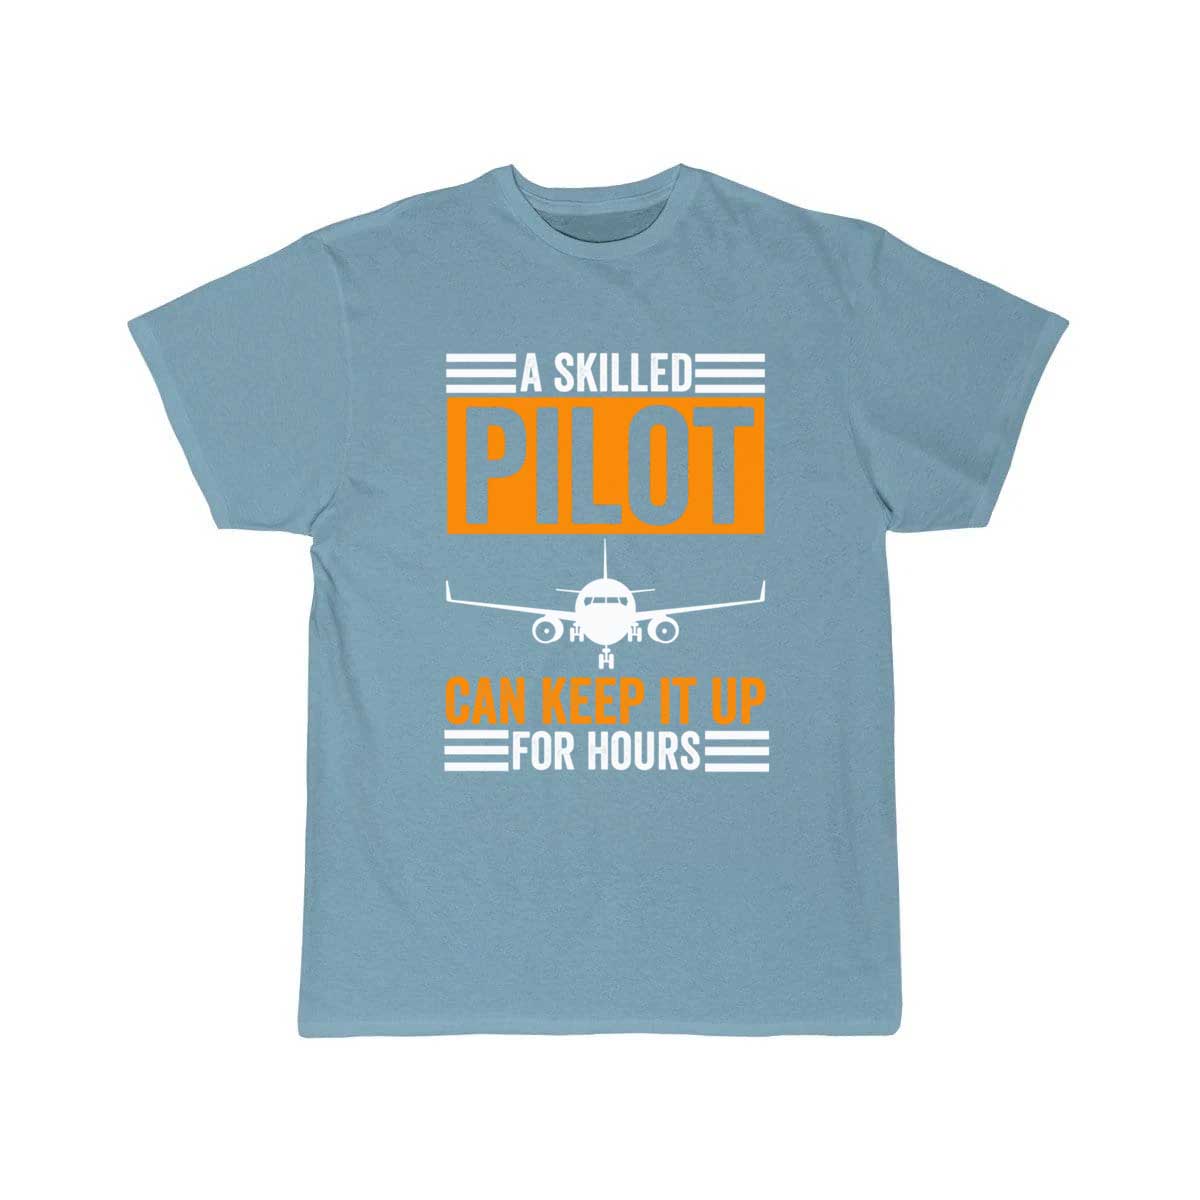 Glider Plane Pilot Airplane Flight Jet Fighter Gif T Shirt THE AV8R